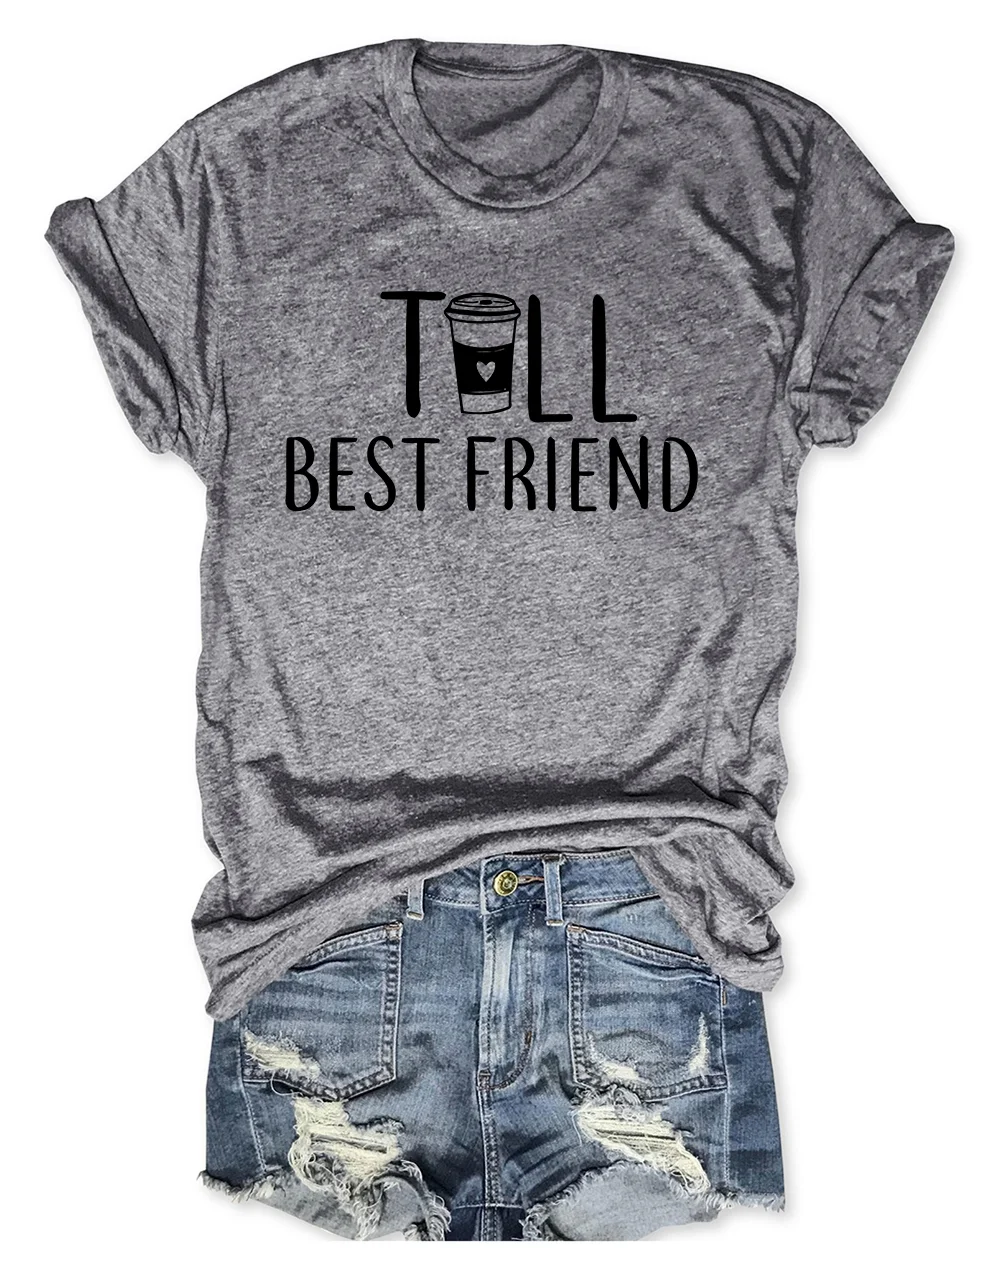 Tall/Short Best Friend T-Shirt